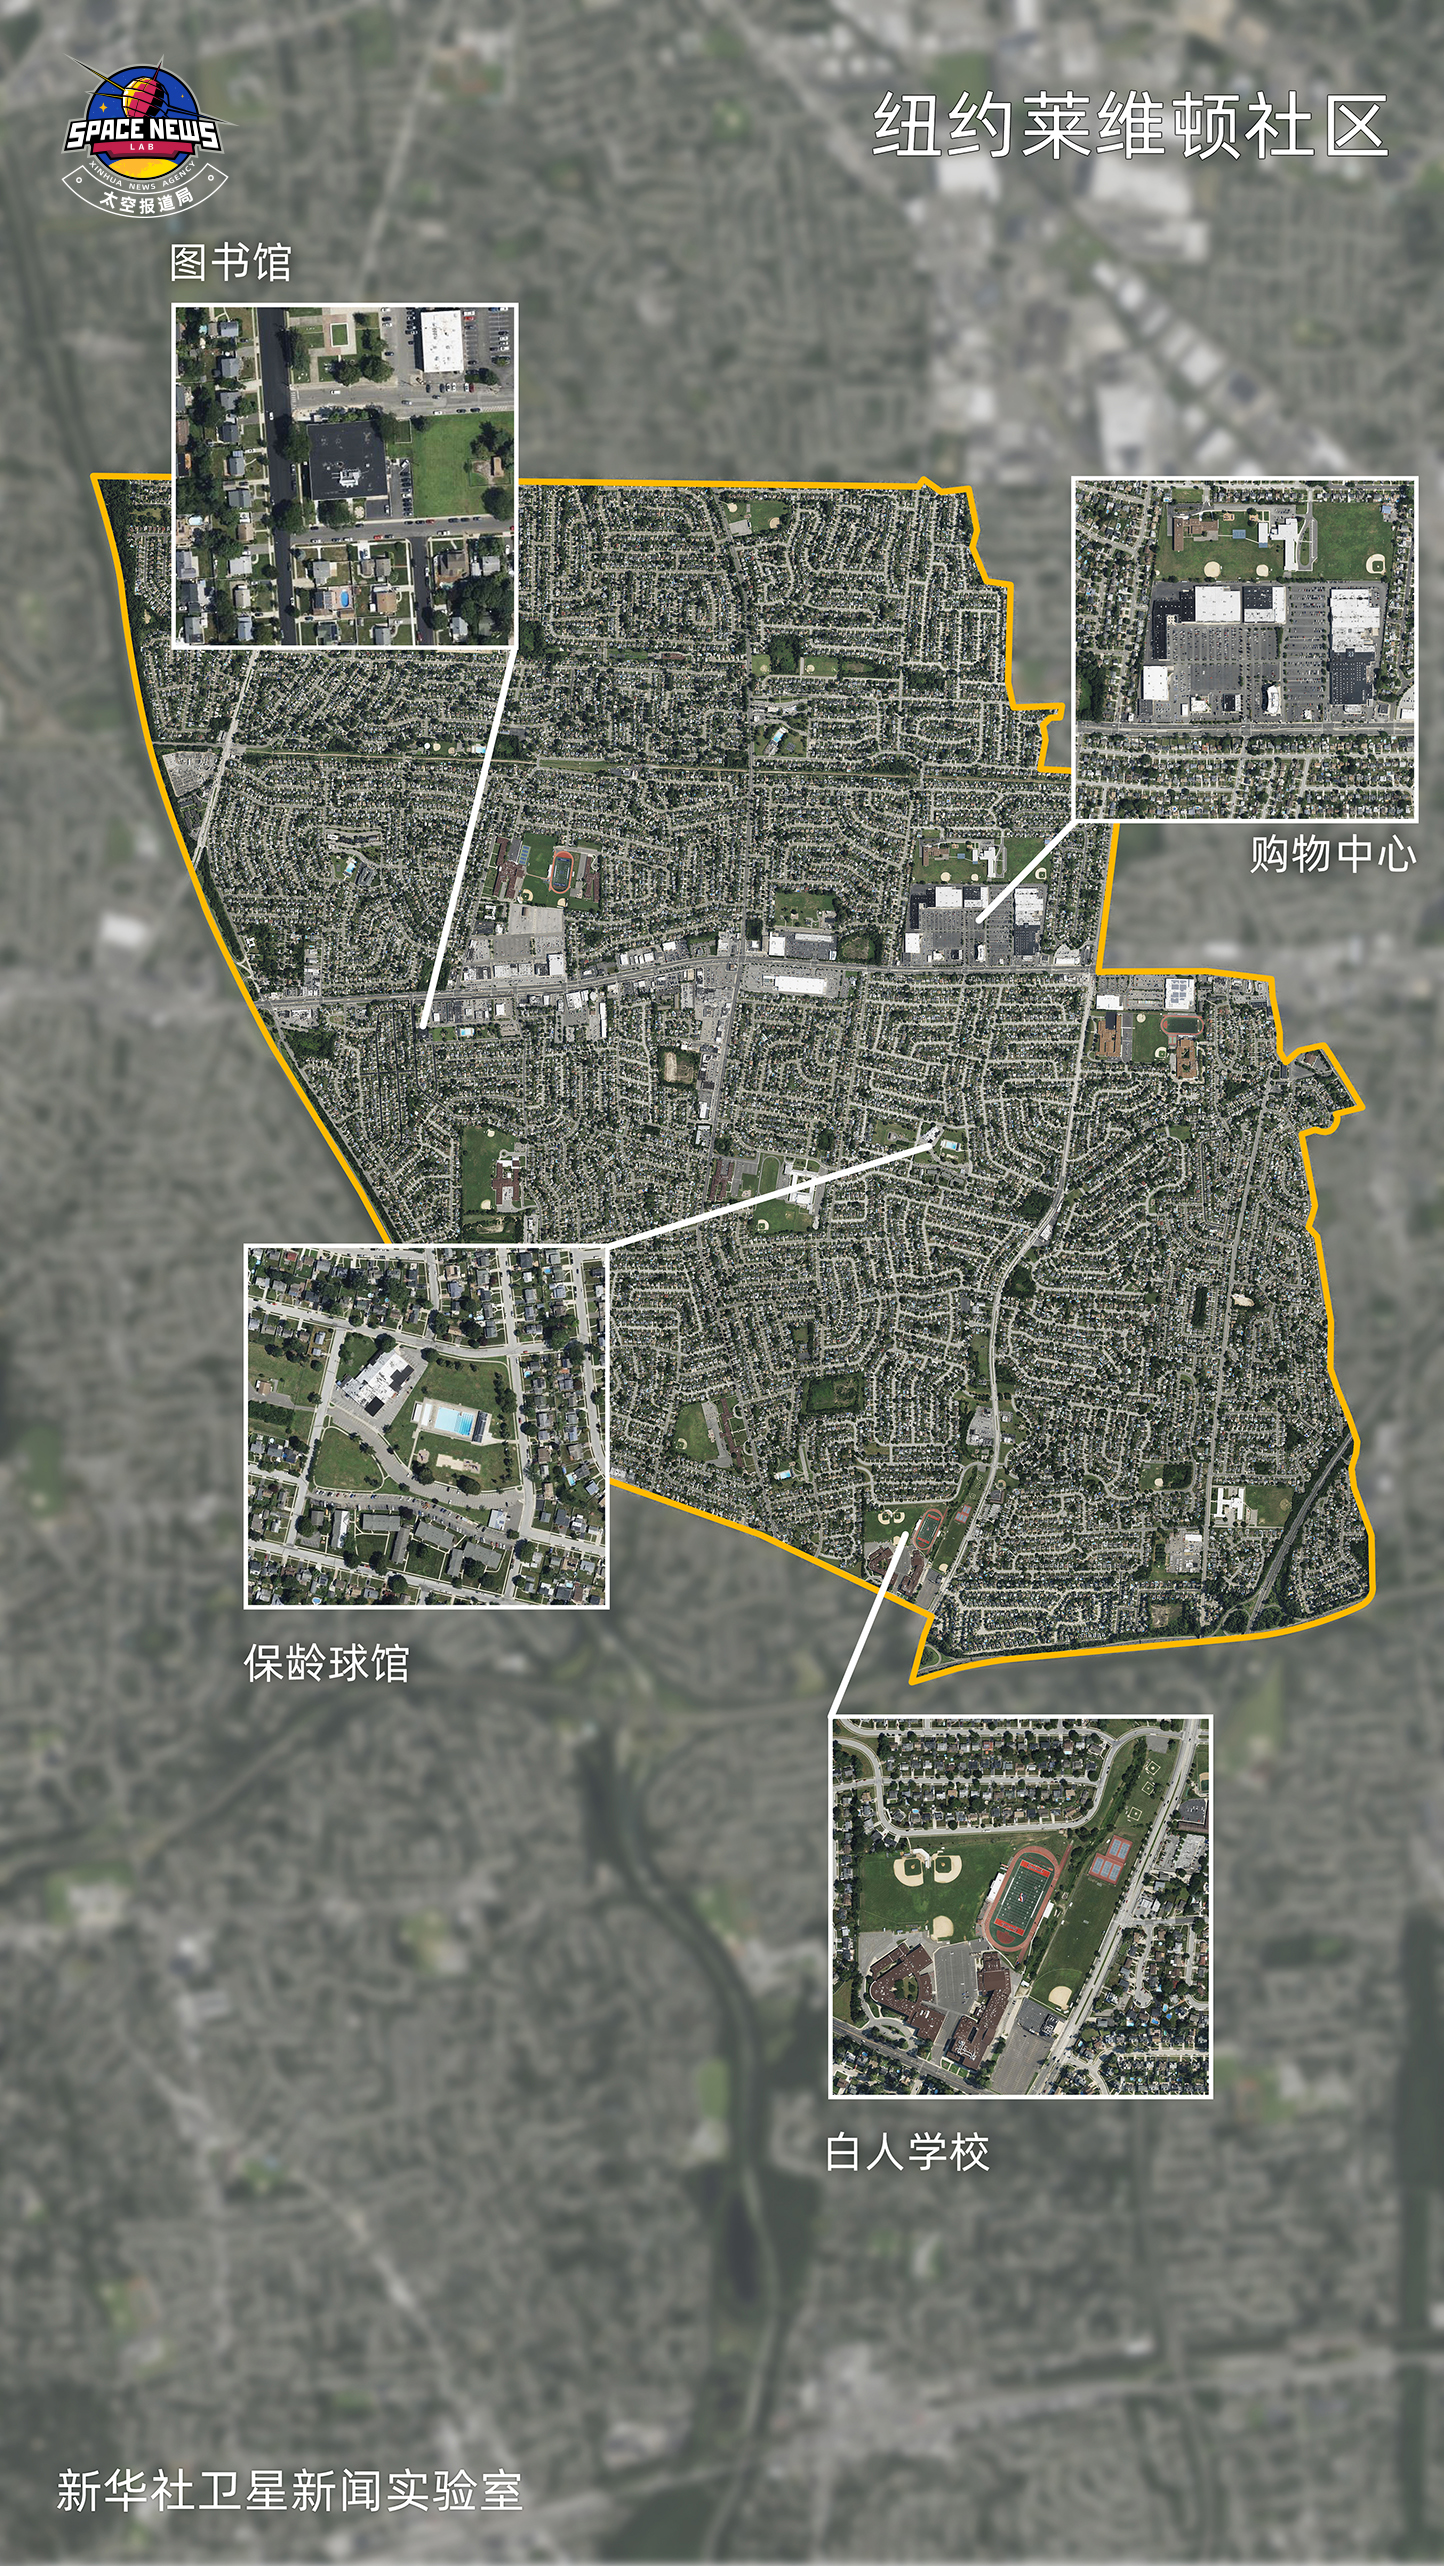 卫星影像显示美国城市顽疾3